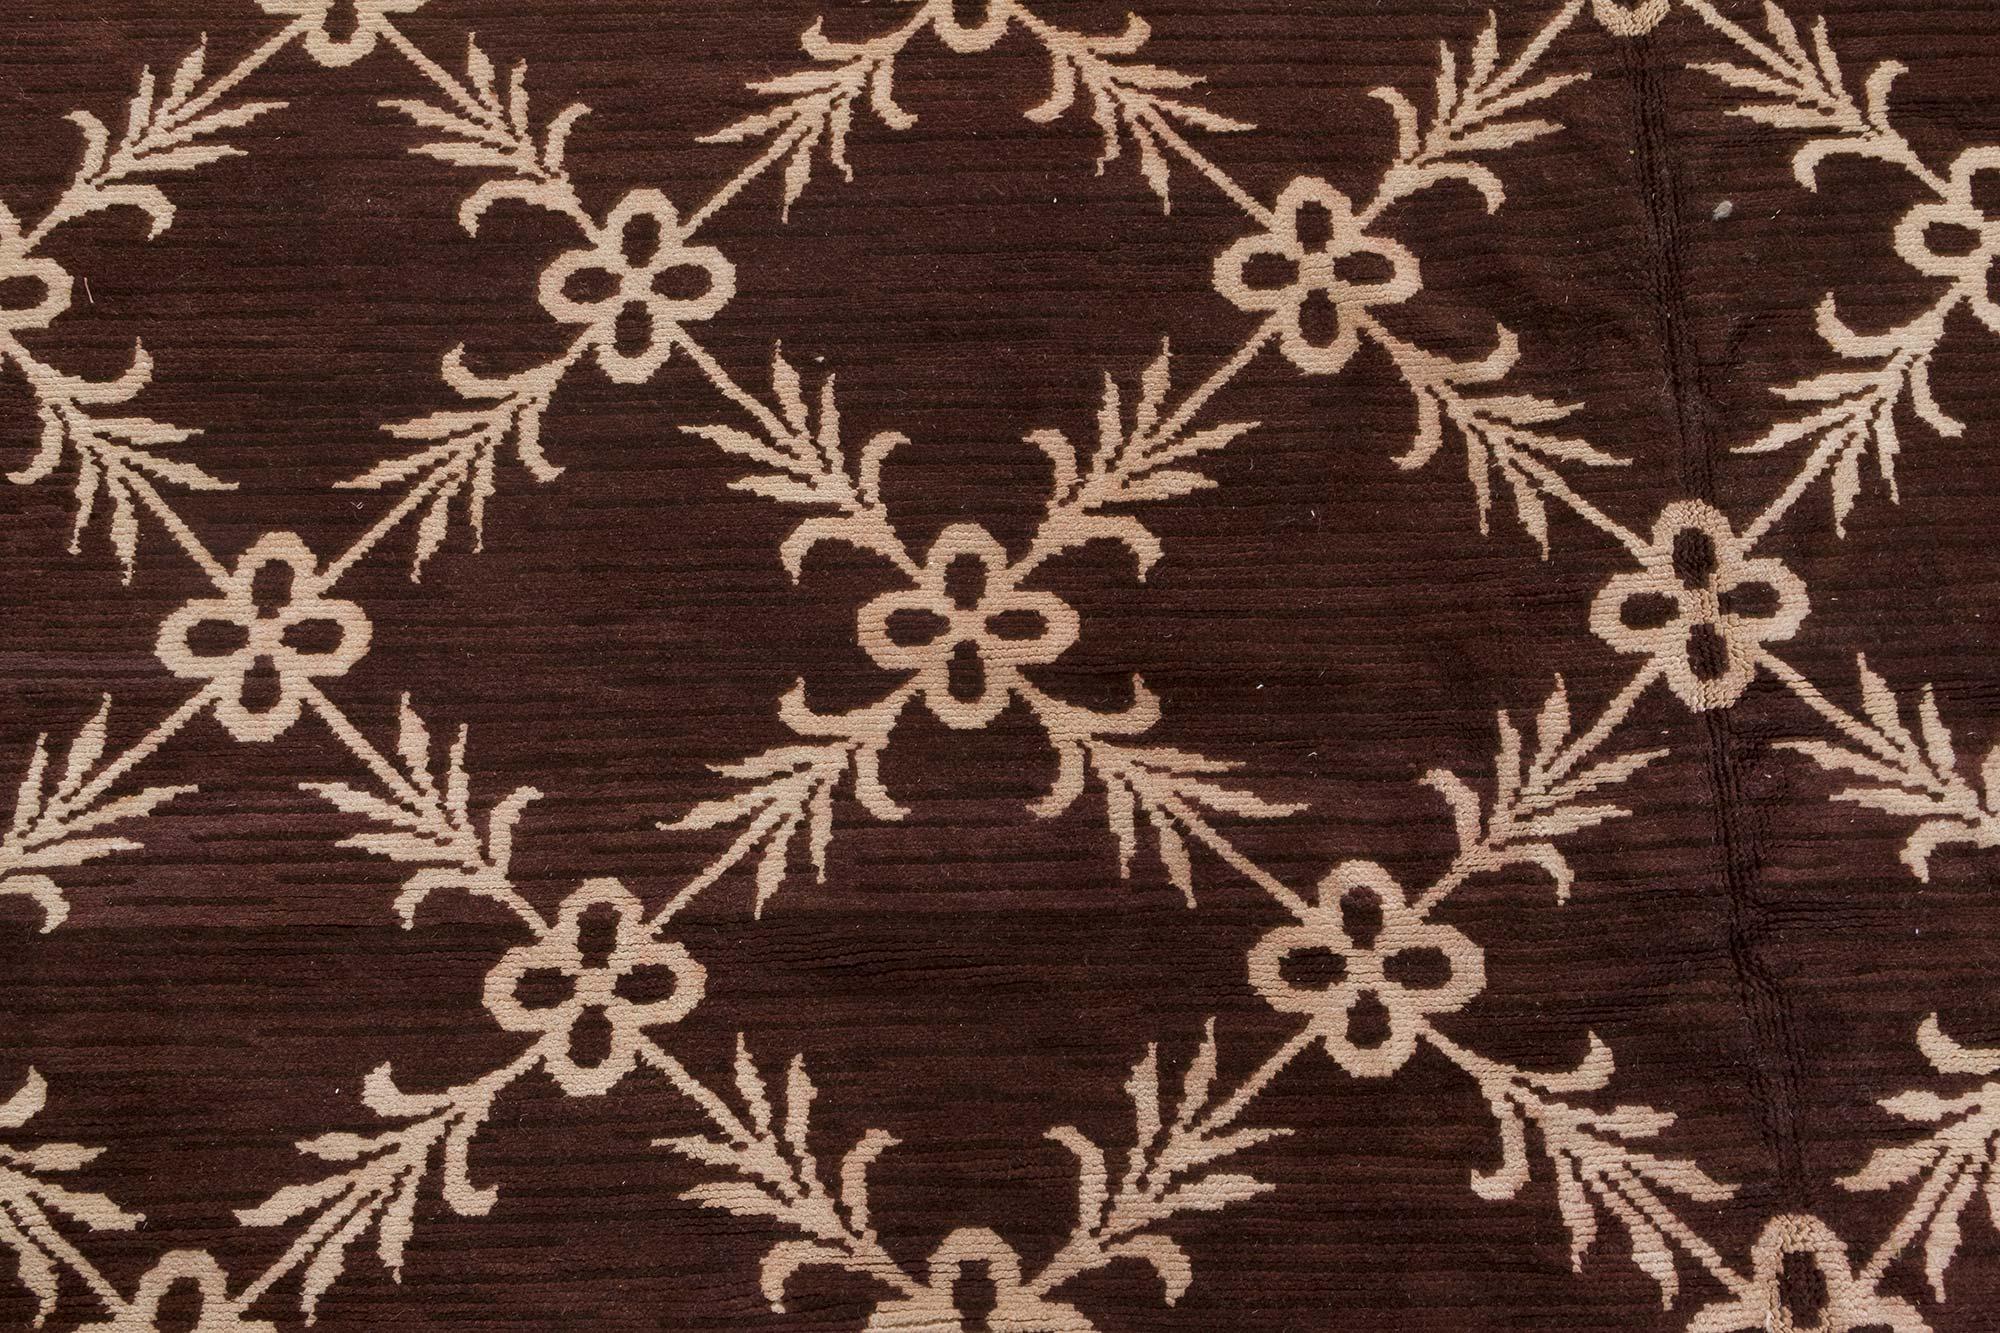 Vintage Spanish Botanic Chocolate braun und elfenbein handgewebte Wolle Teppich
Größe: 11'7